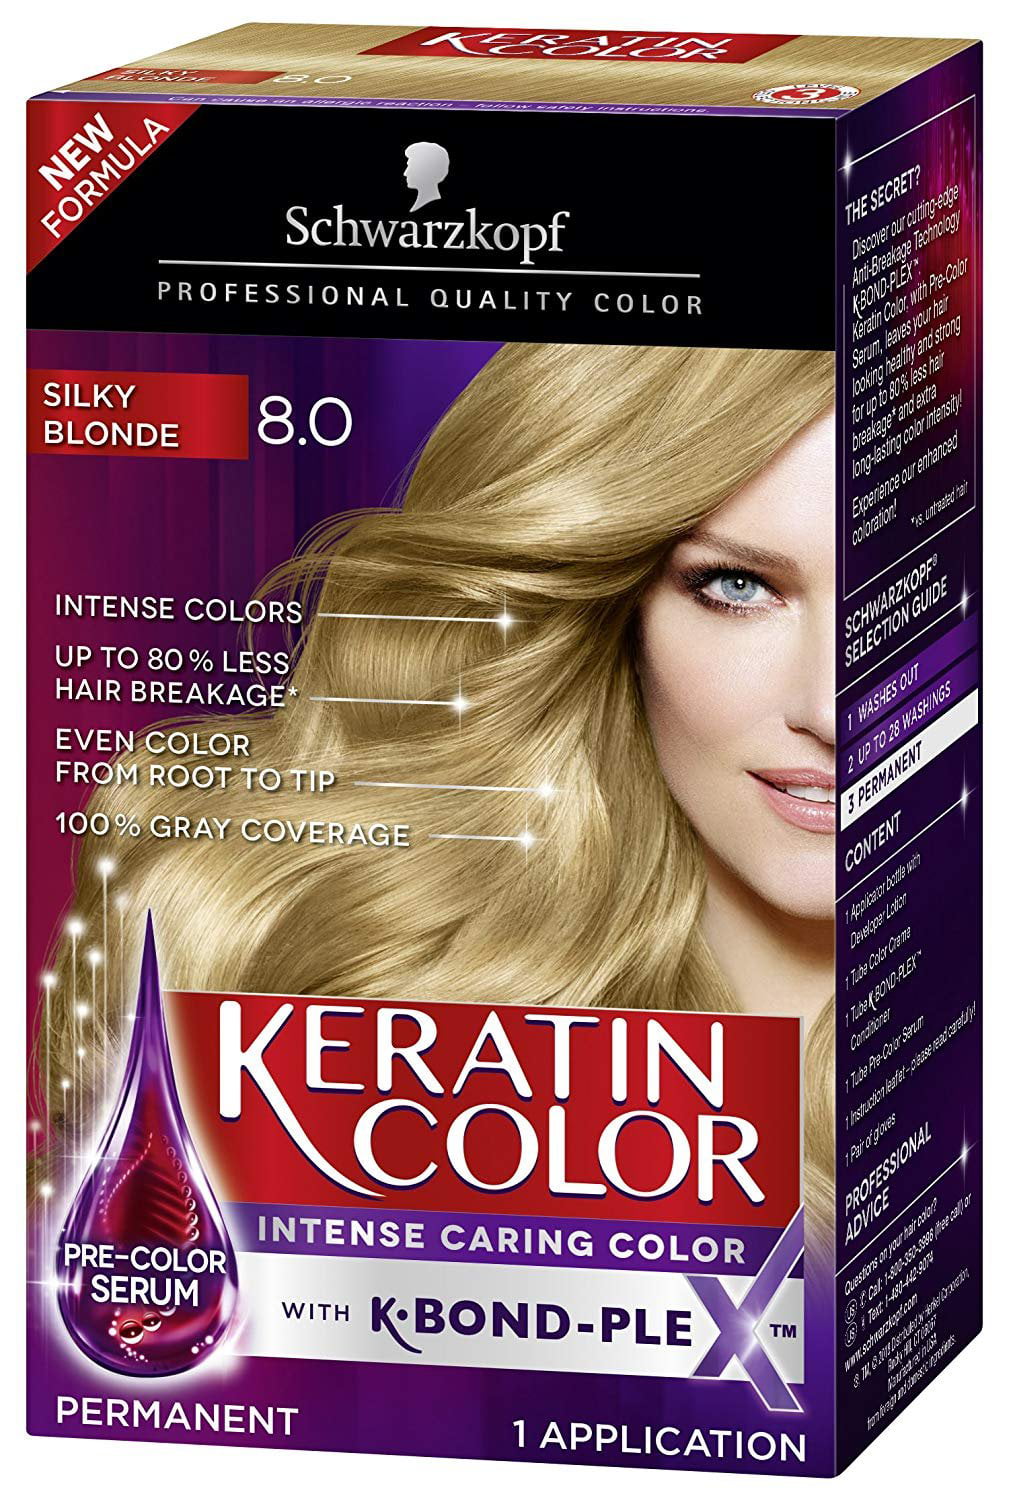 Schwarzkopf Keratin Color AntiAge Hair Color Cream, 8.0